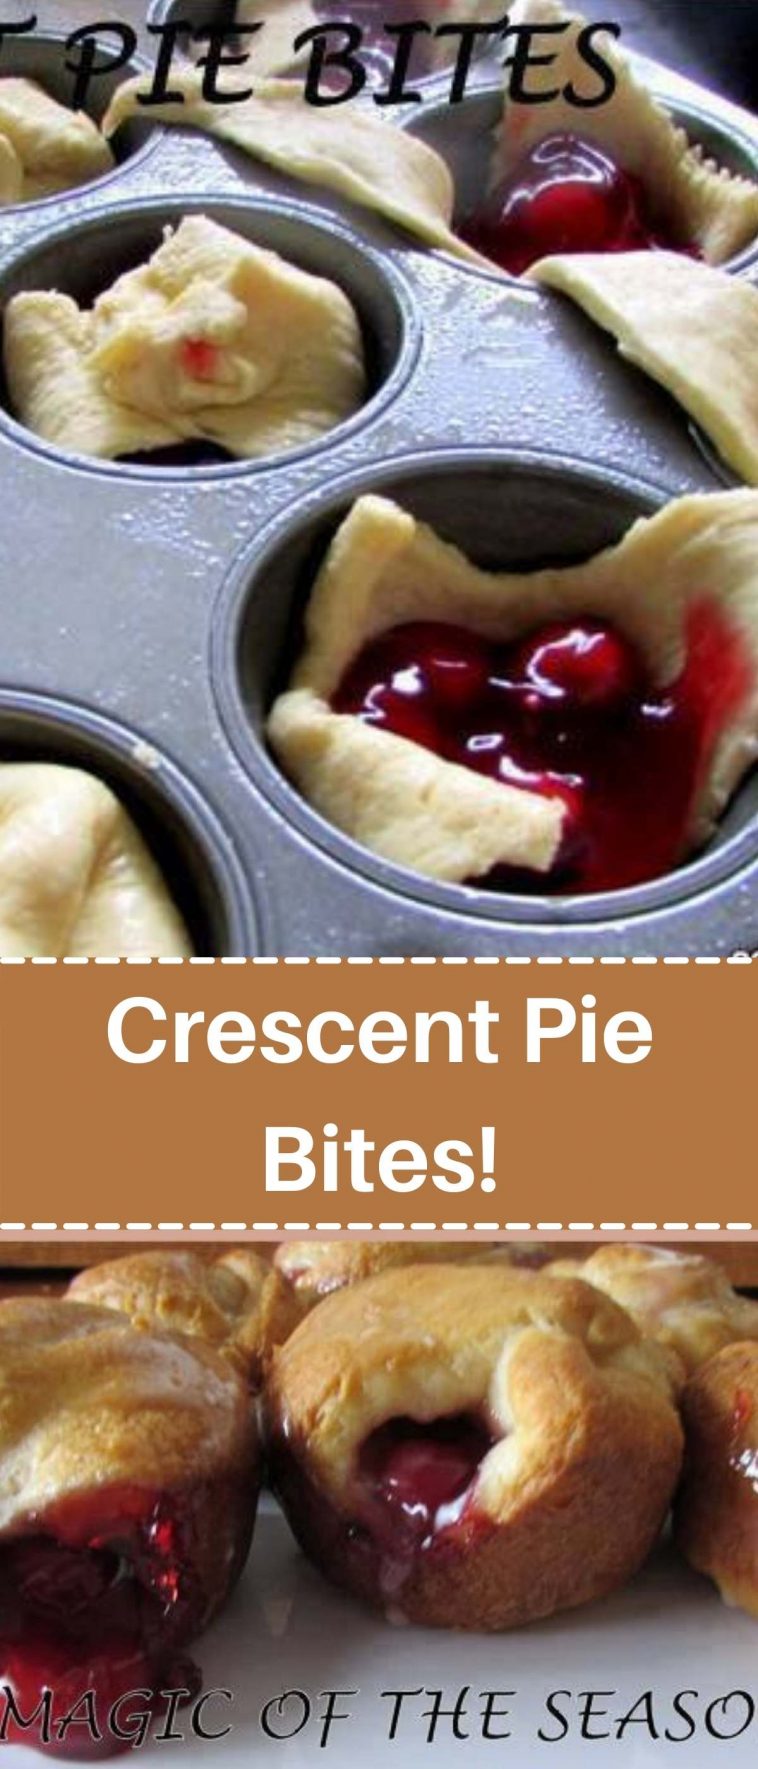 Crescent Pie Bites!